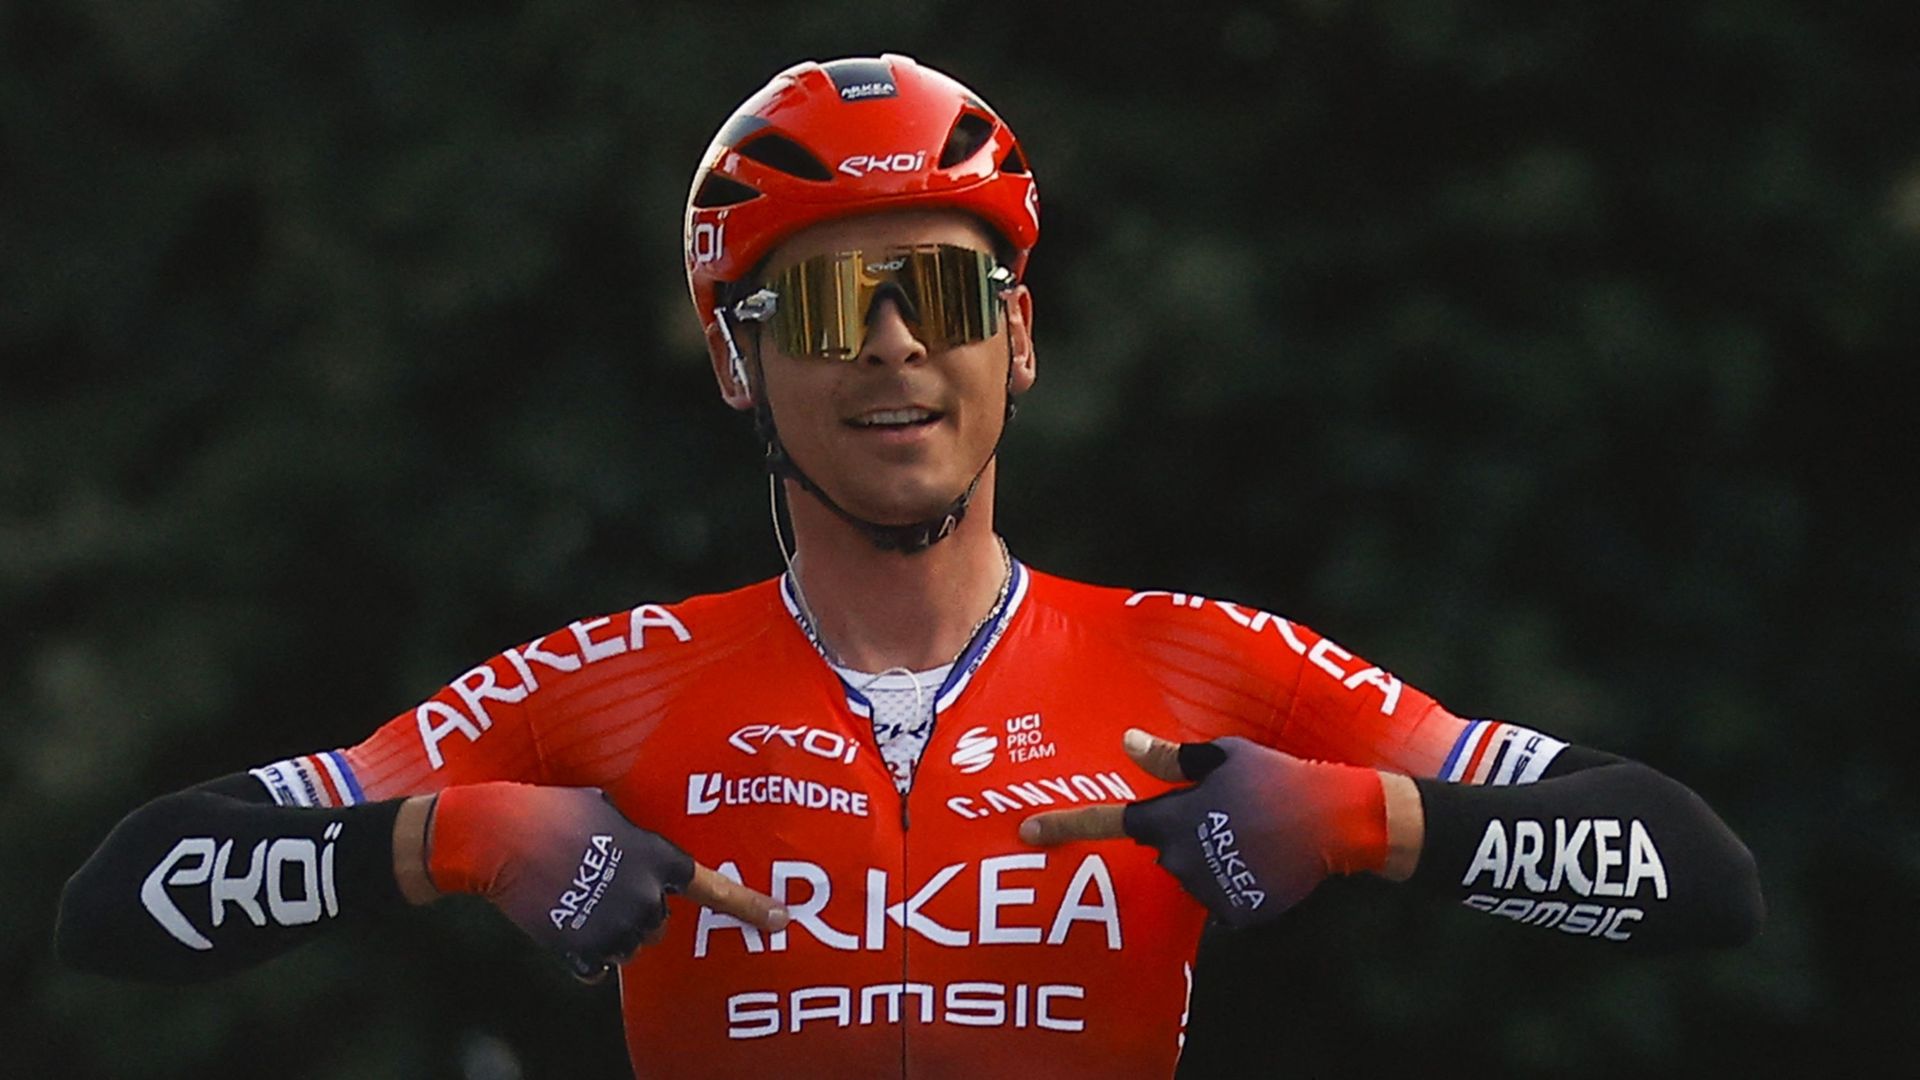 Warren Barguil s'impose sur la 5e étape en Italie.